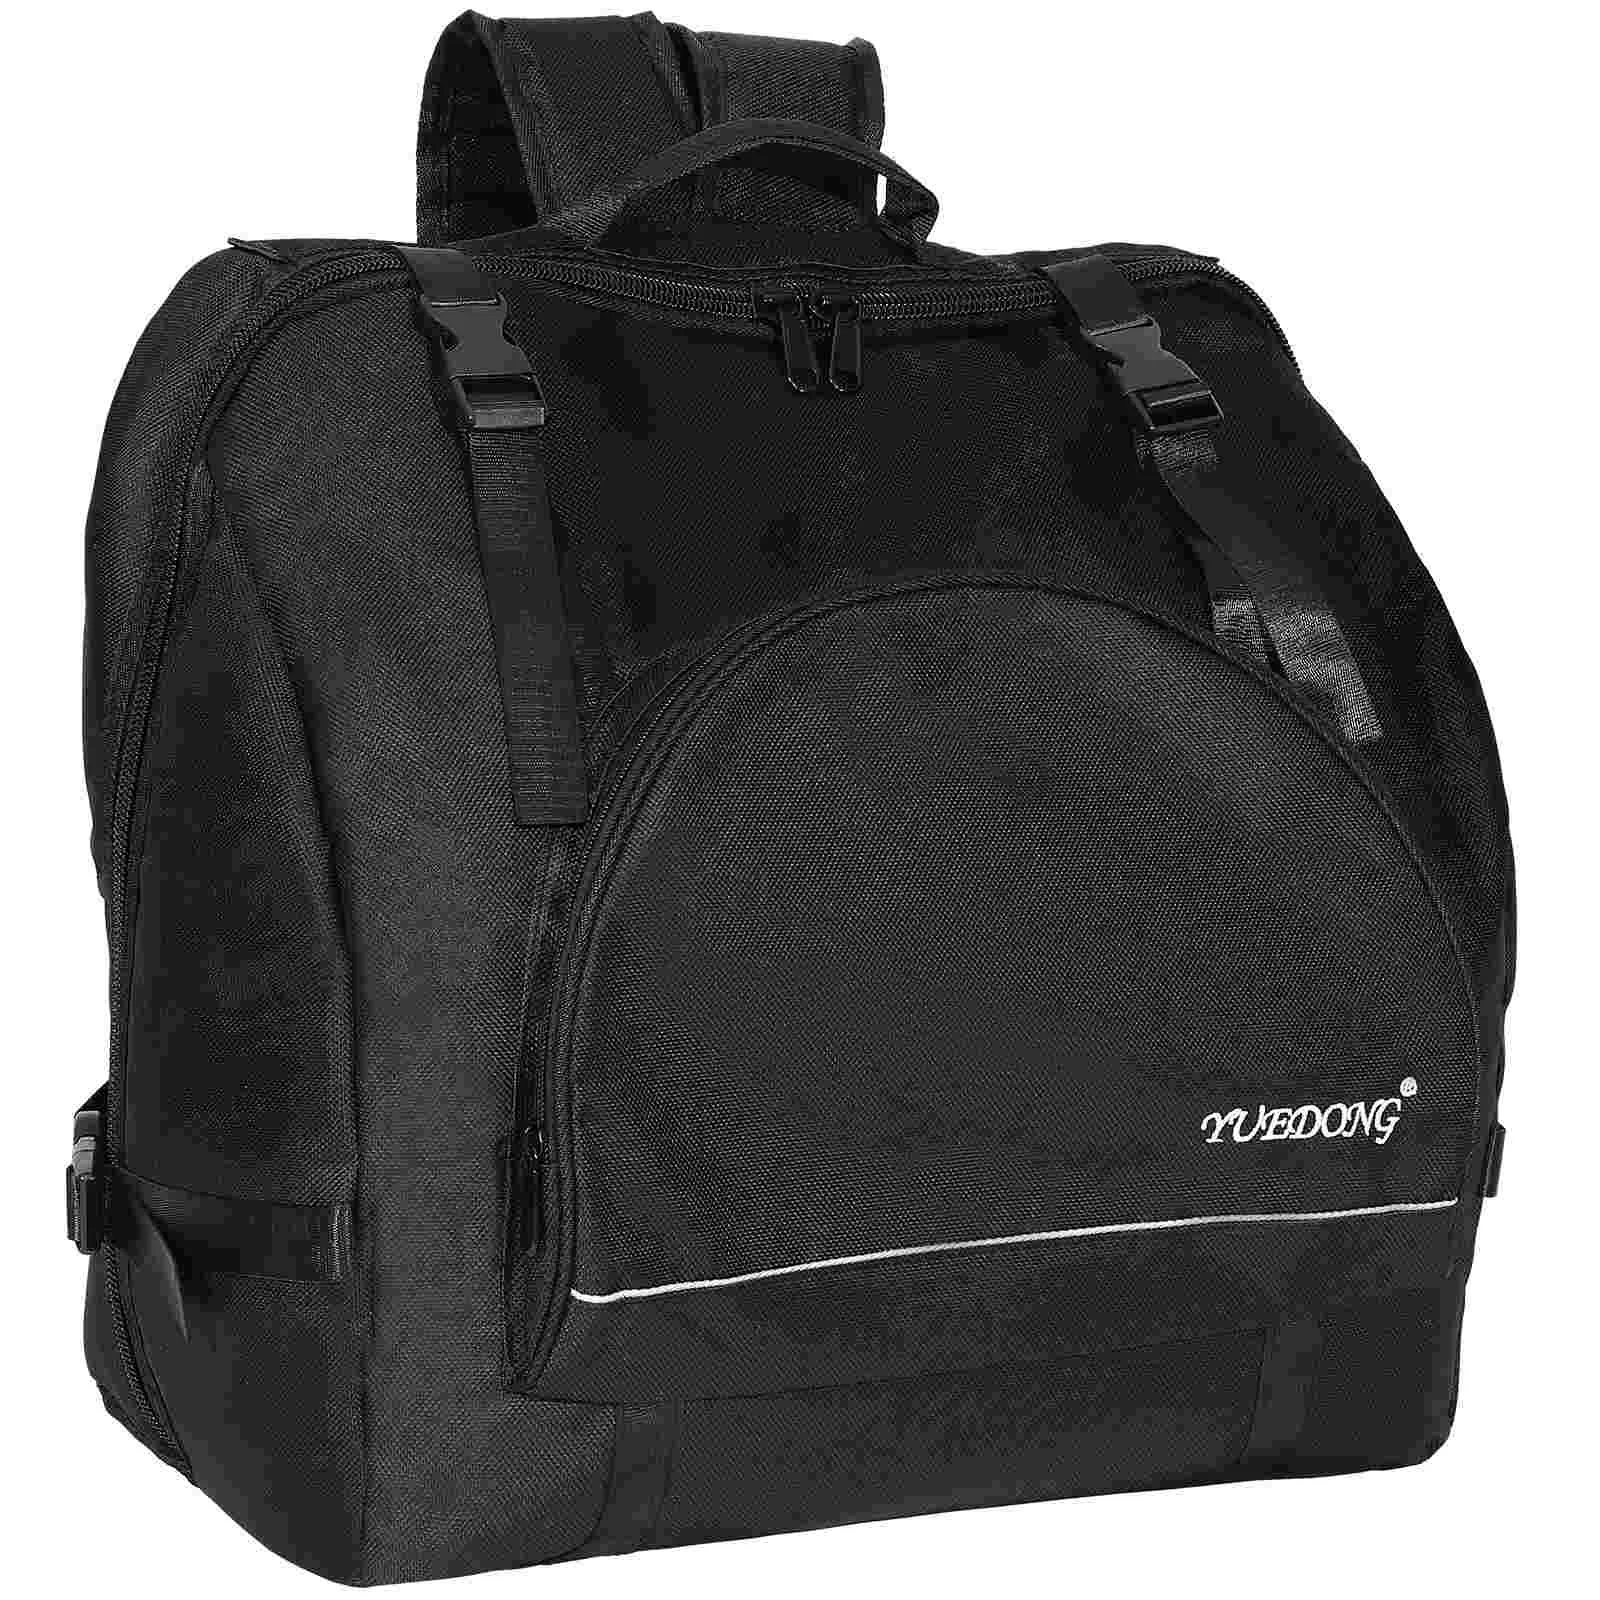 

Accordion Backpack Adult Adjustable Shoulder Shockproof Storage Bag Case Oxford Cloth Gig Instrument Accessories Holder